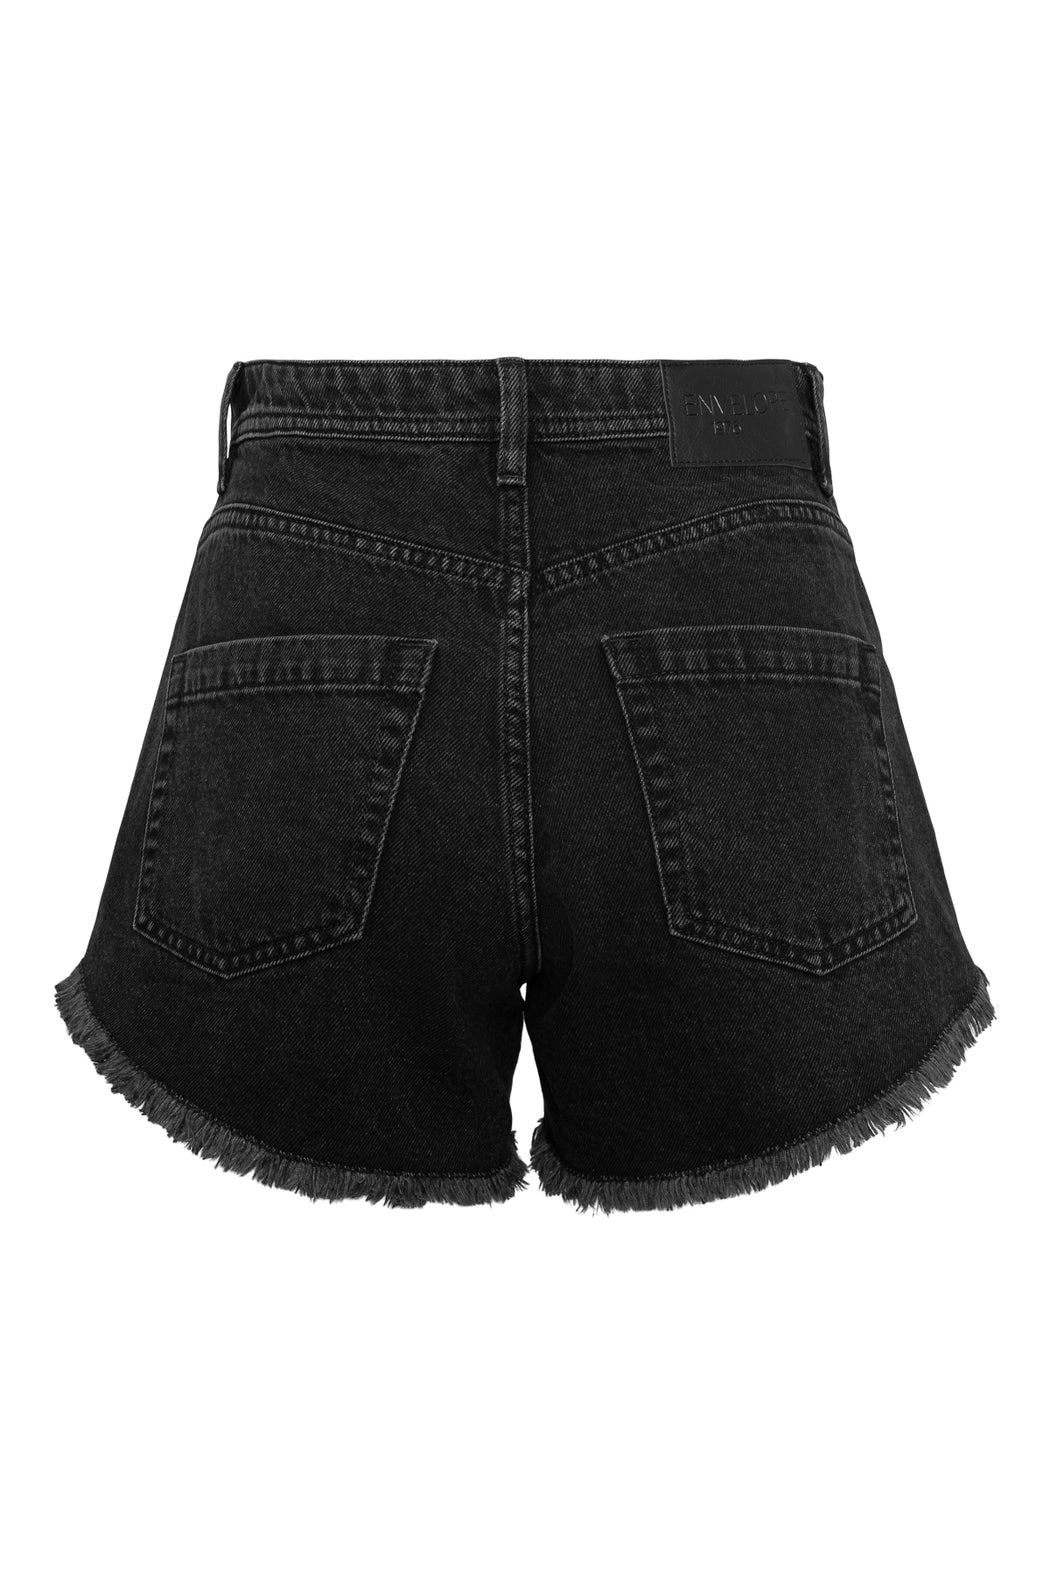 Envelope1976 Porto shorts, Washed black Shorts Washed black